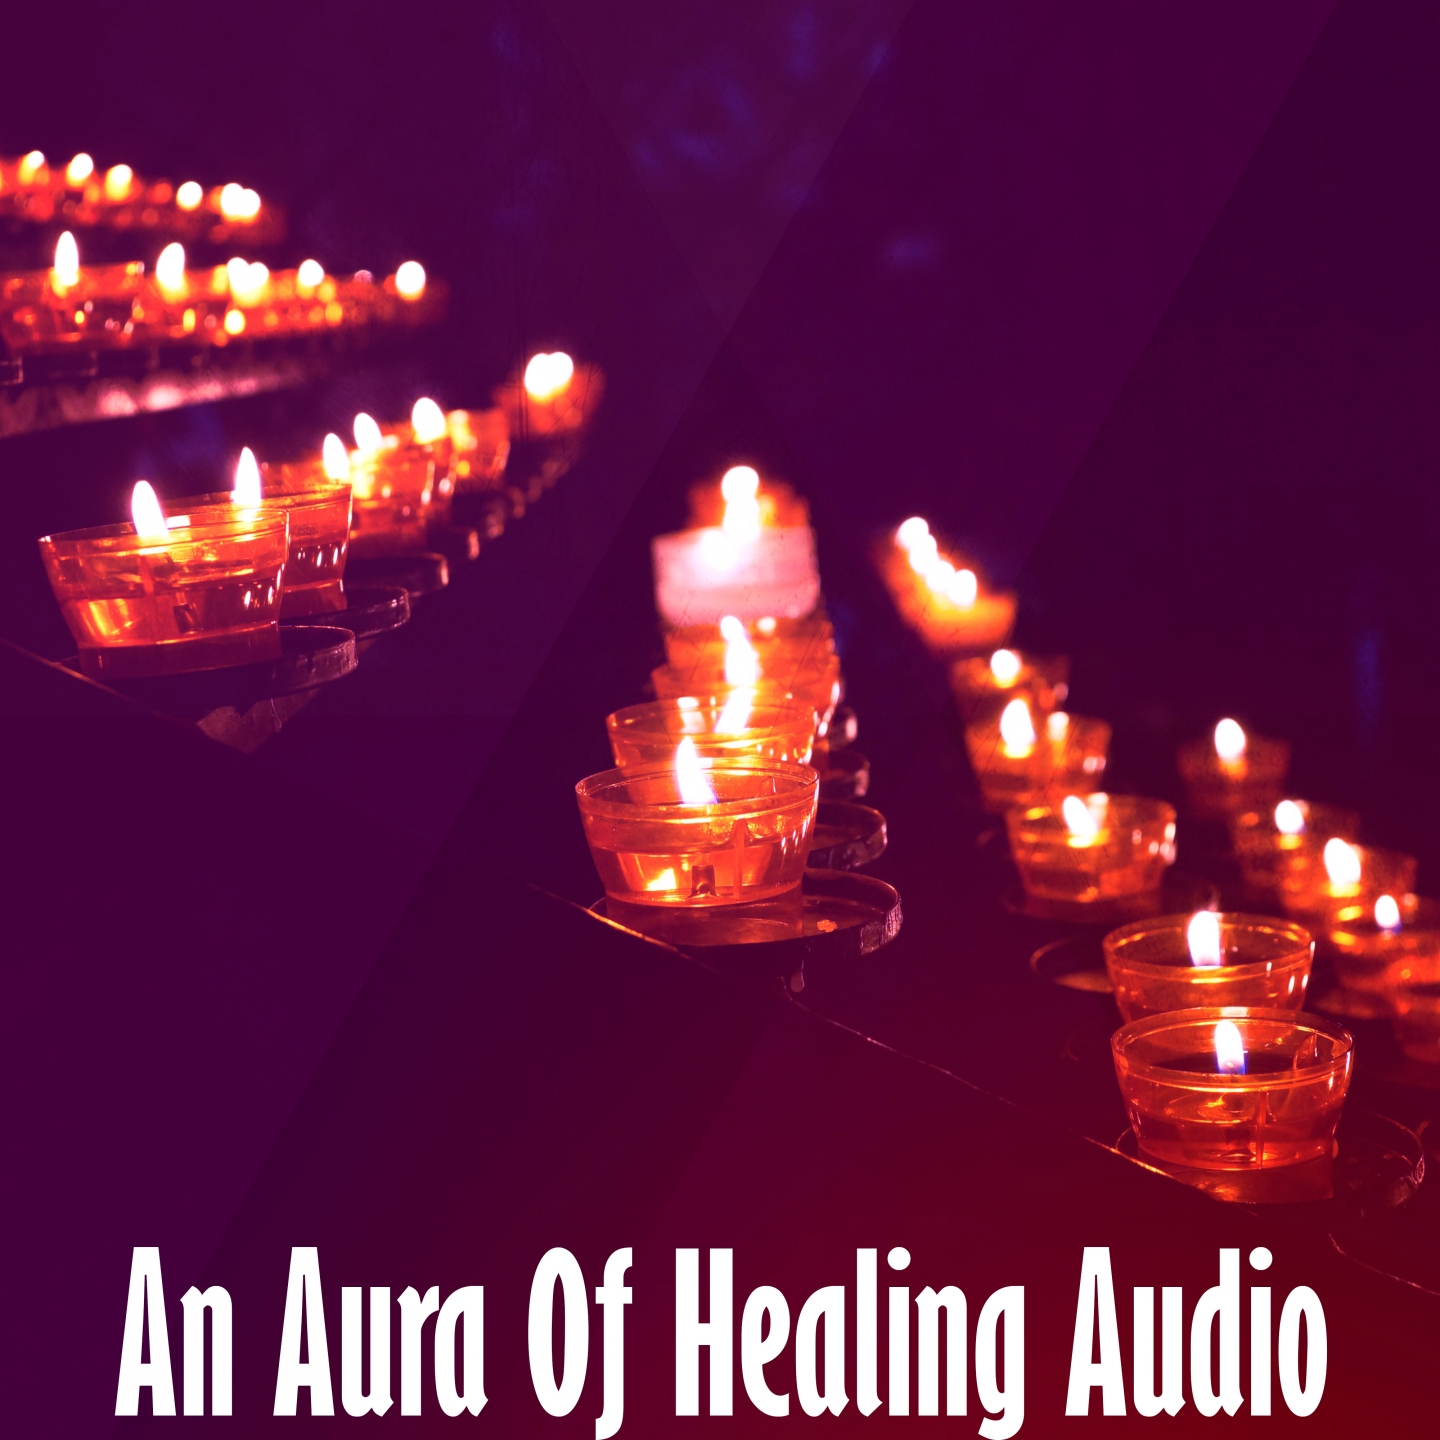 An Aura Of Healing Audio